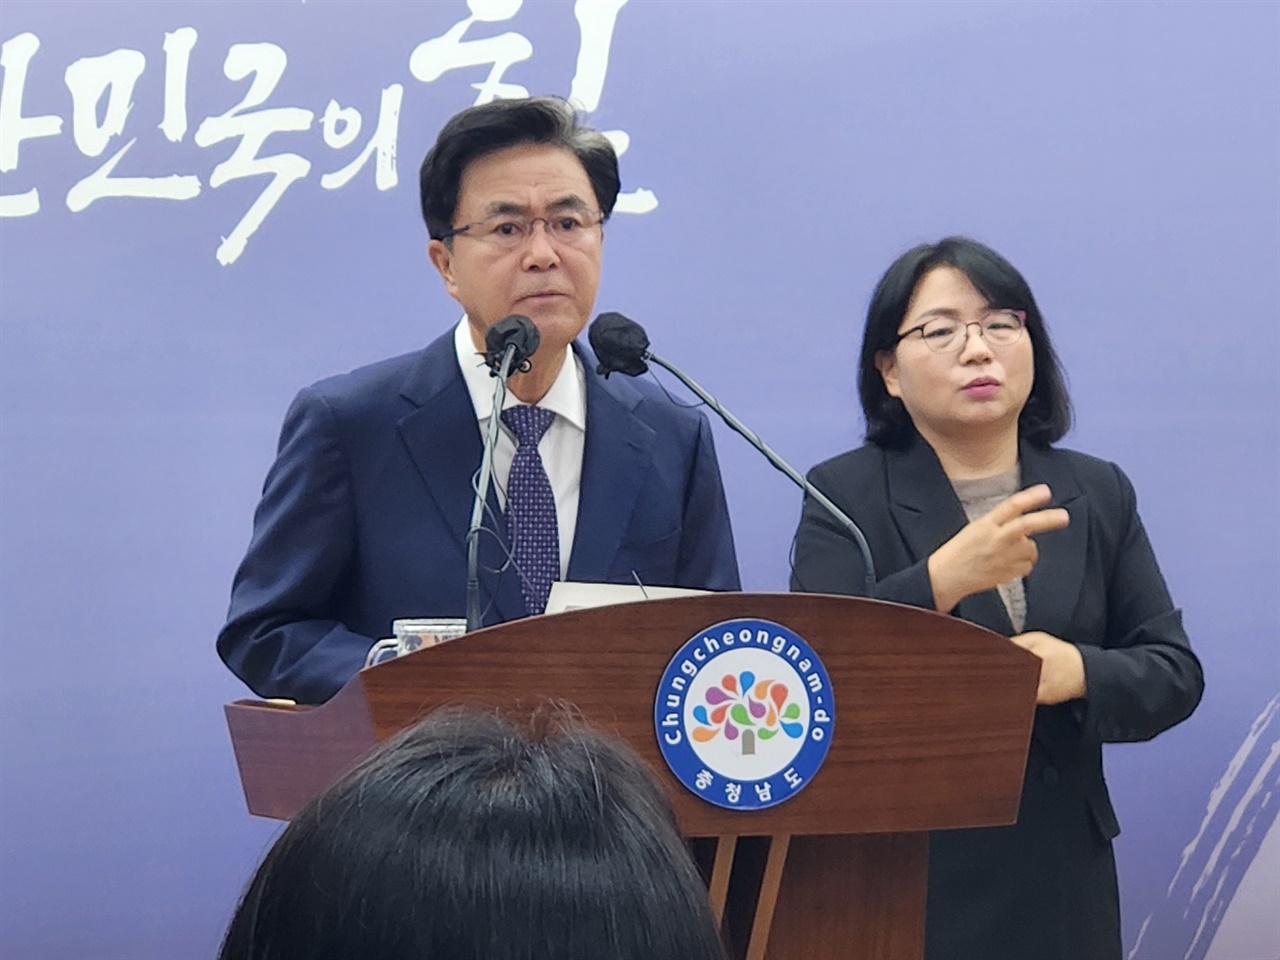 6일 김태흠 충남지사가 기자회견을 열고 서울 메가시티에 대한 입장을 밝혔다. 